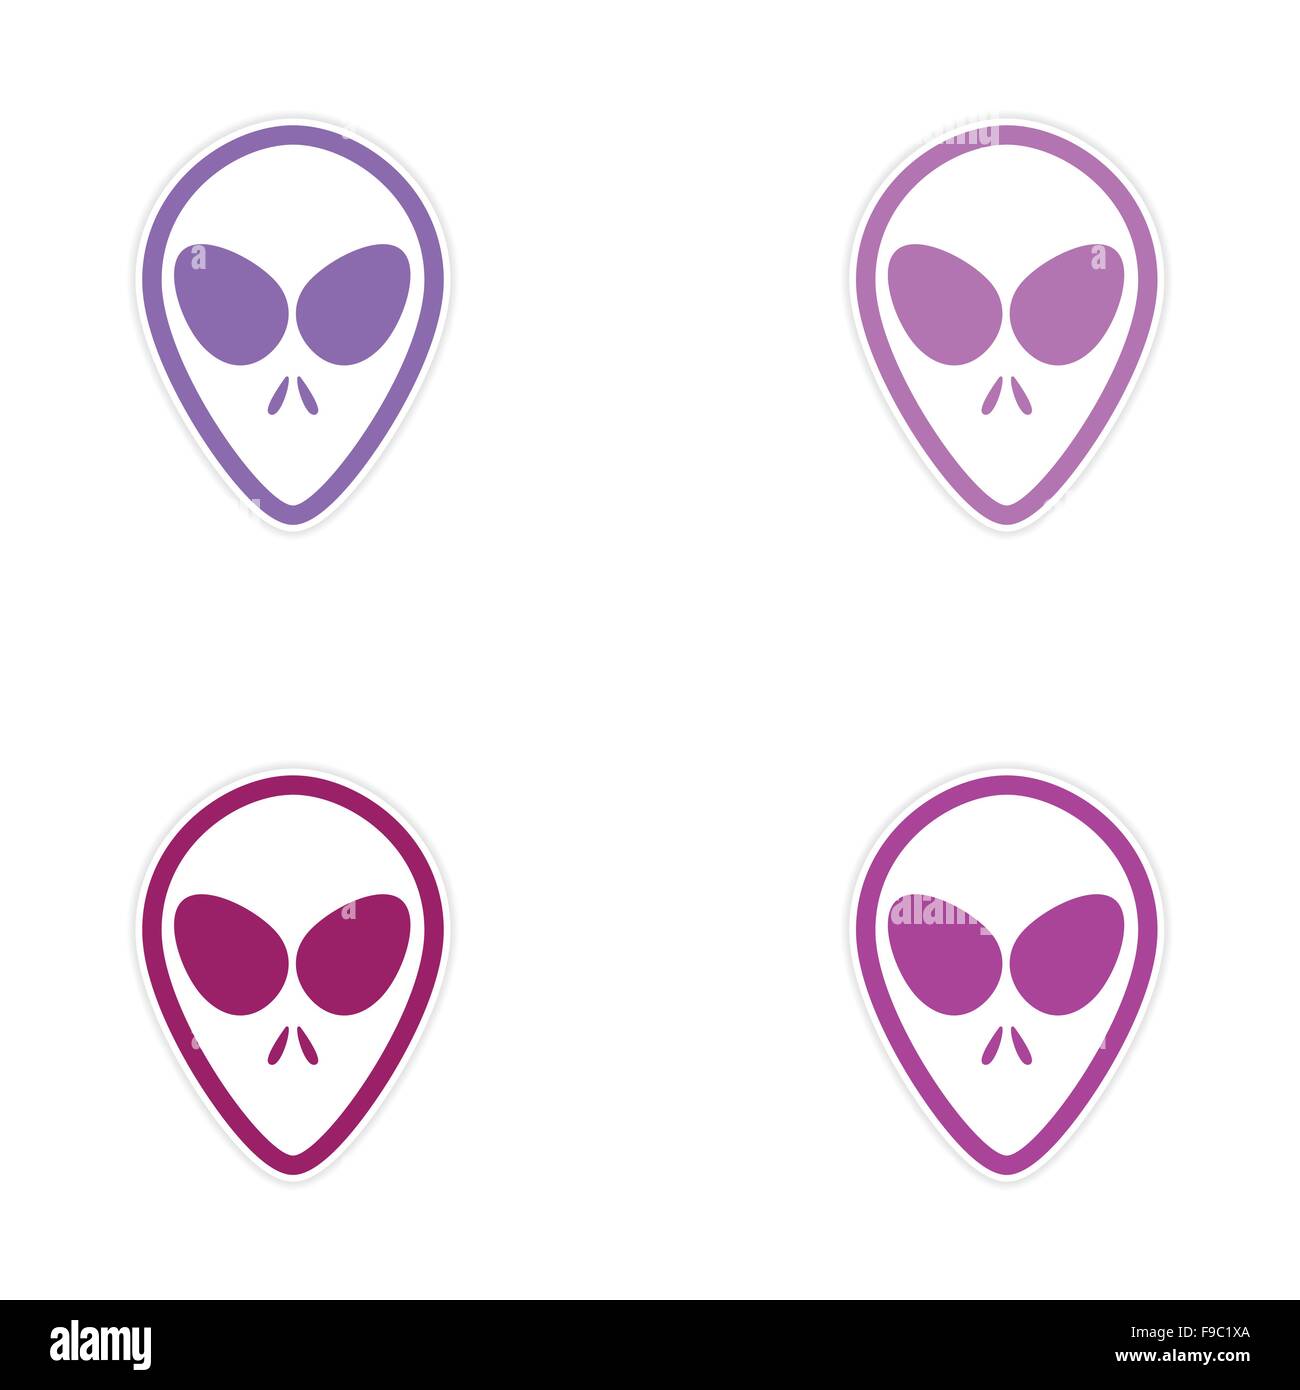 Gruppo adesivo Alien con grandi occhi su sfondo bianco Illustrazione Vettoriale